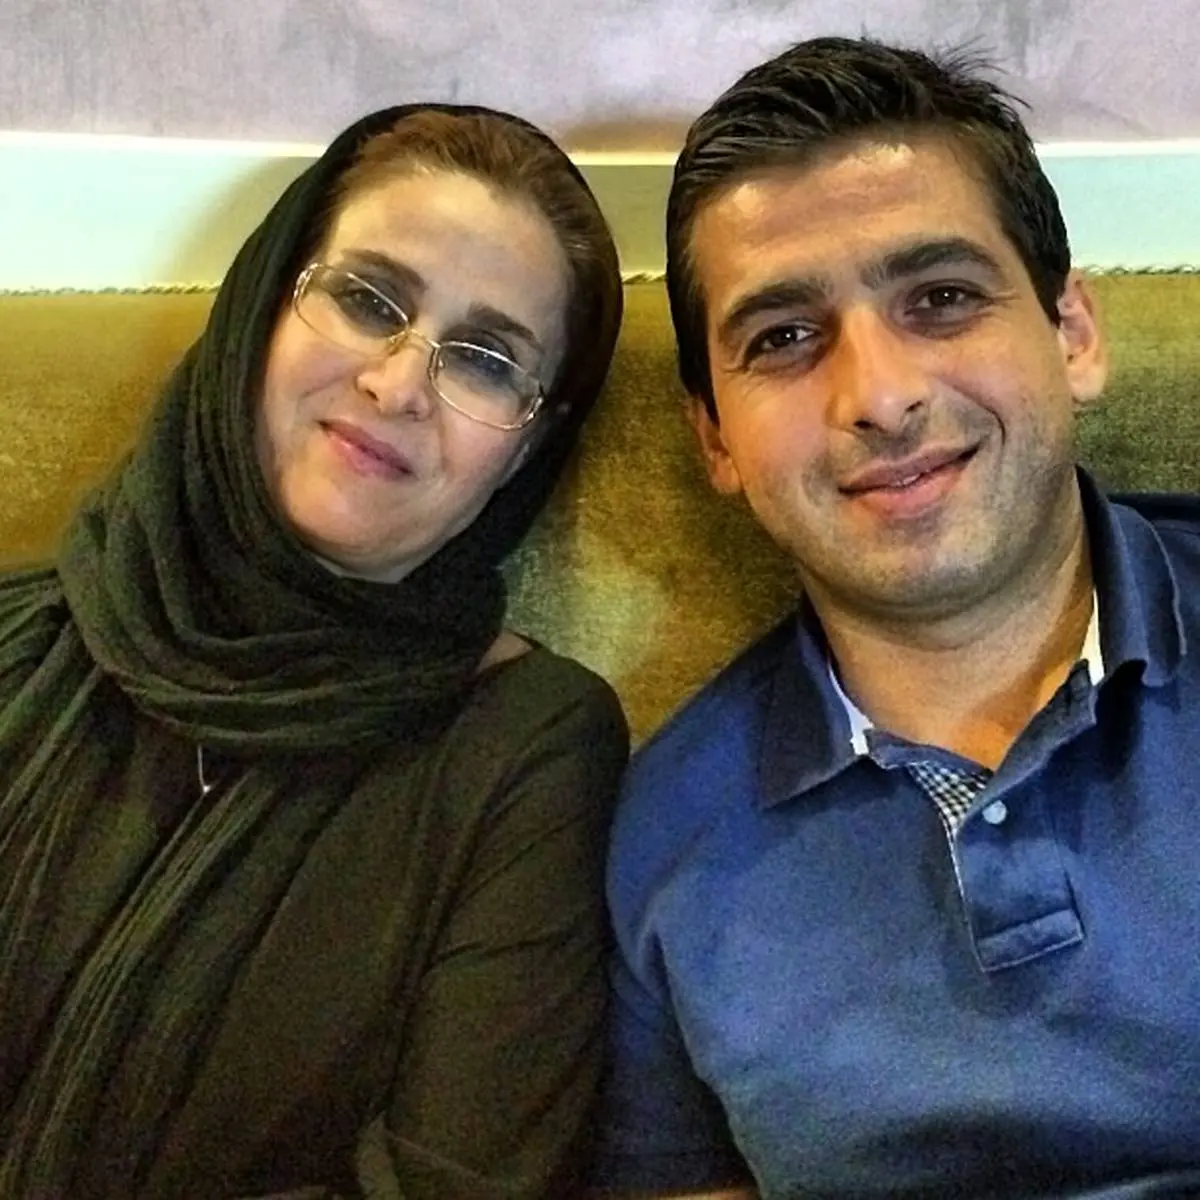 اولین عکس از همسر دوم بازیگر مرد ایرانی همه را غافلگیر کرد! +عکس